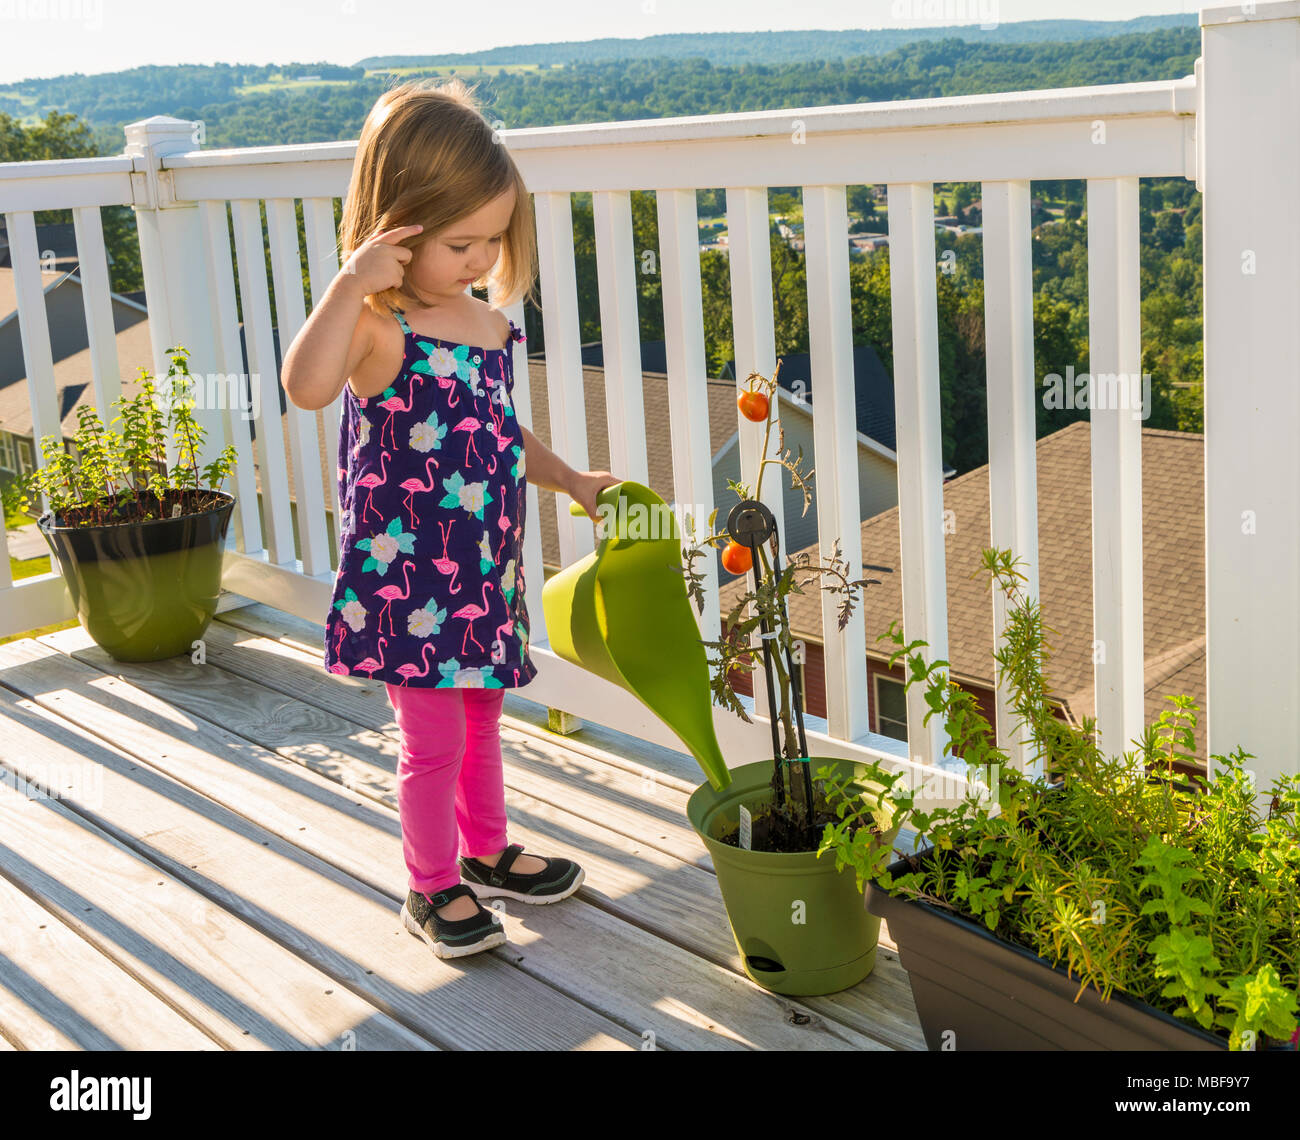 Niño regar una planta sobre un deck de madera en verano Foto de stock